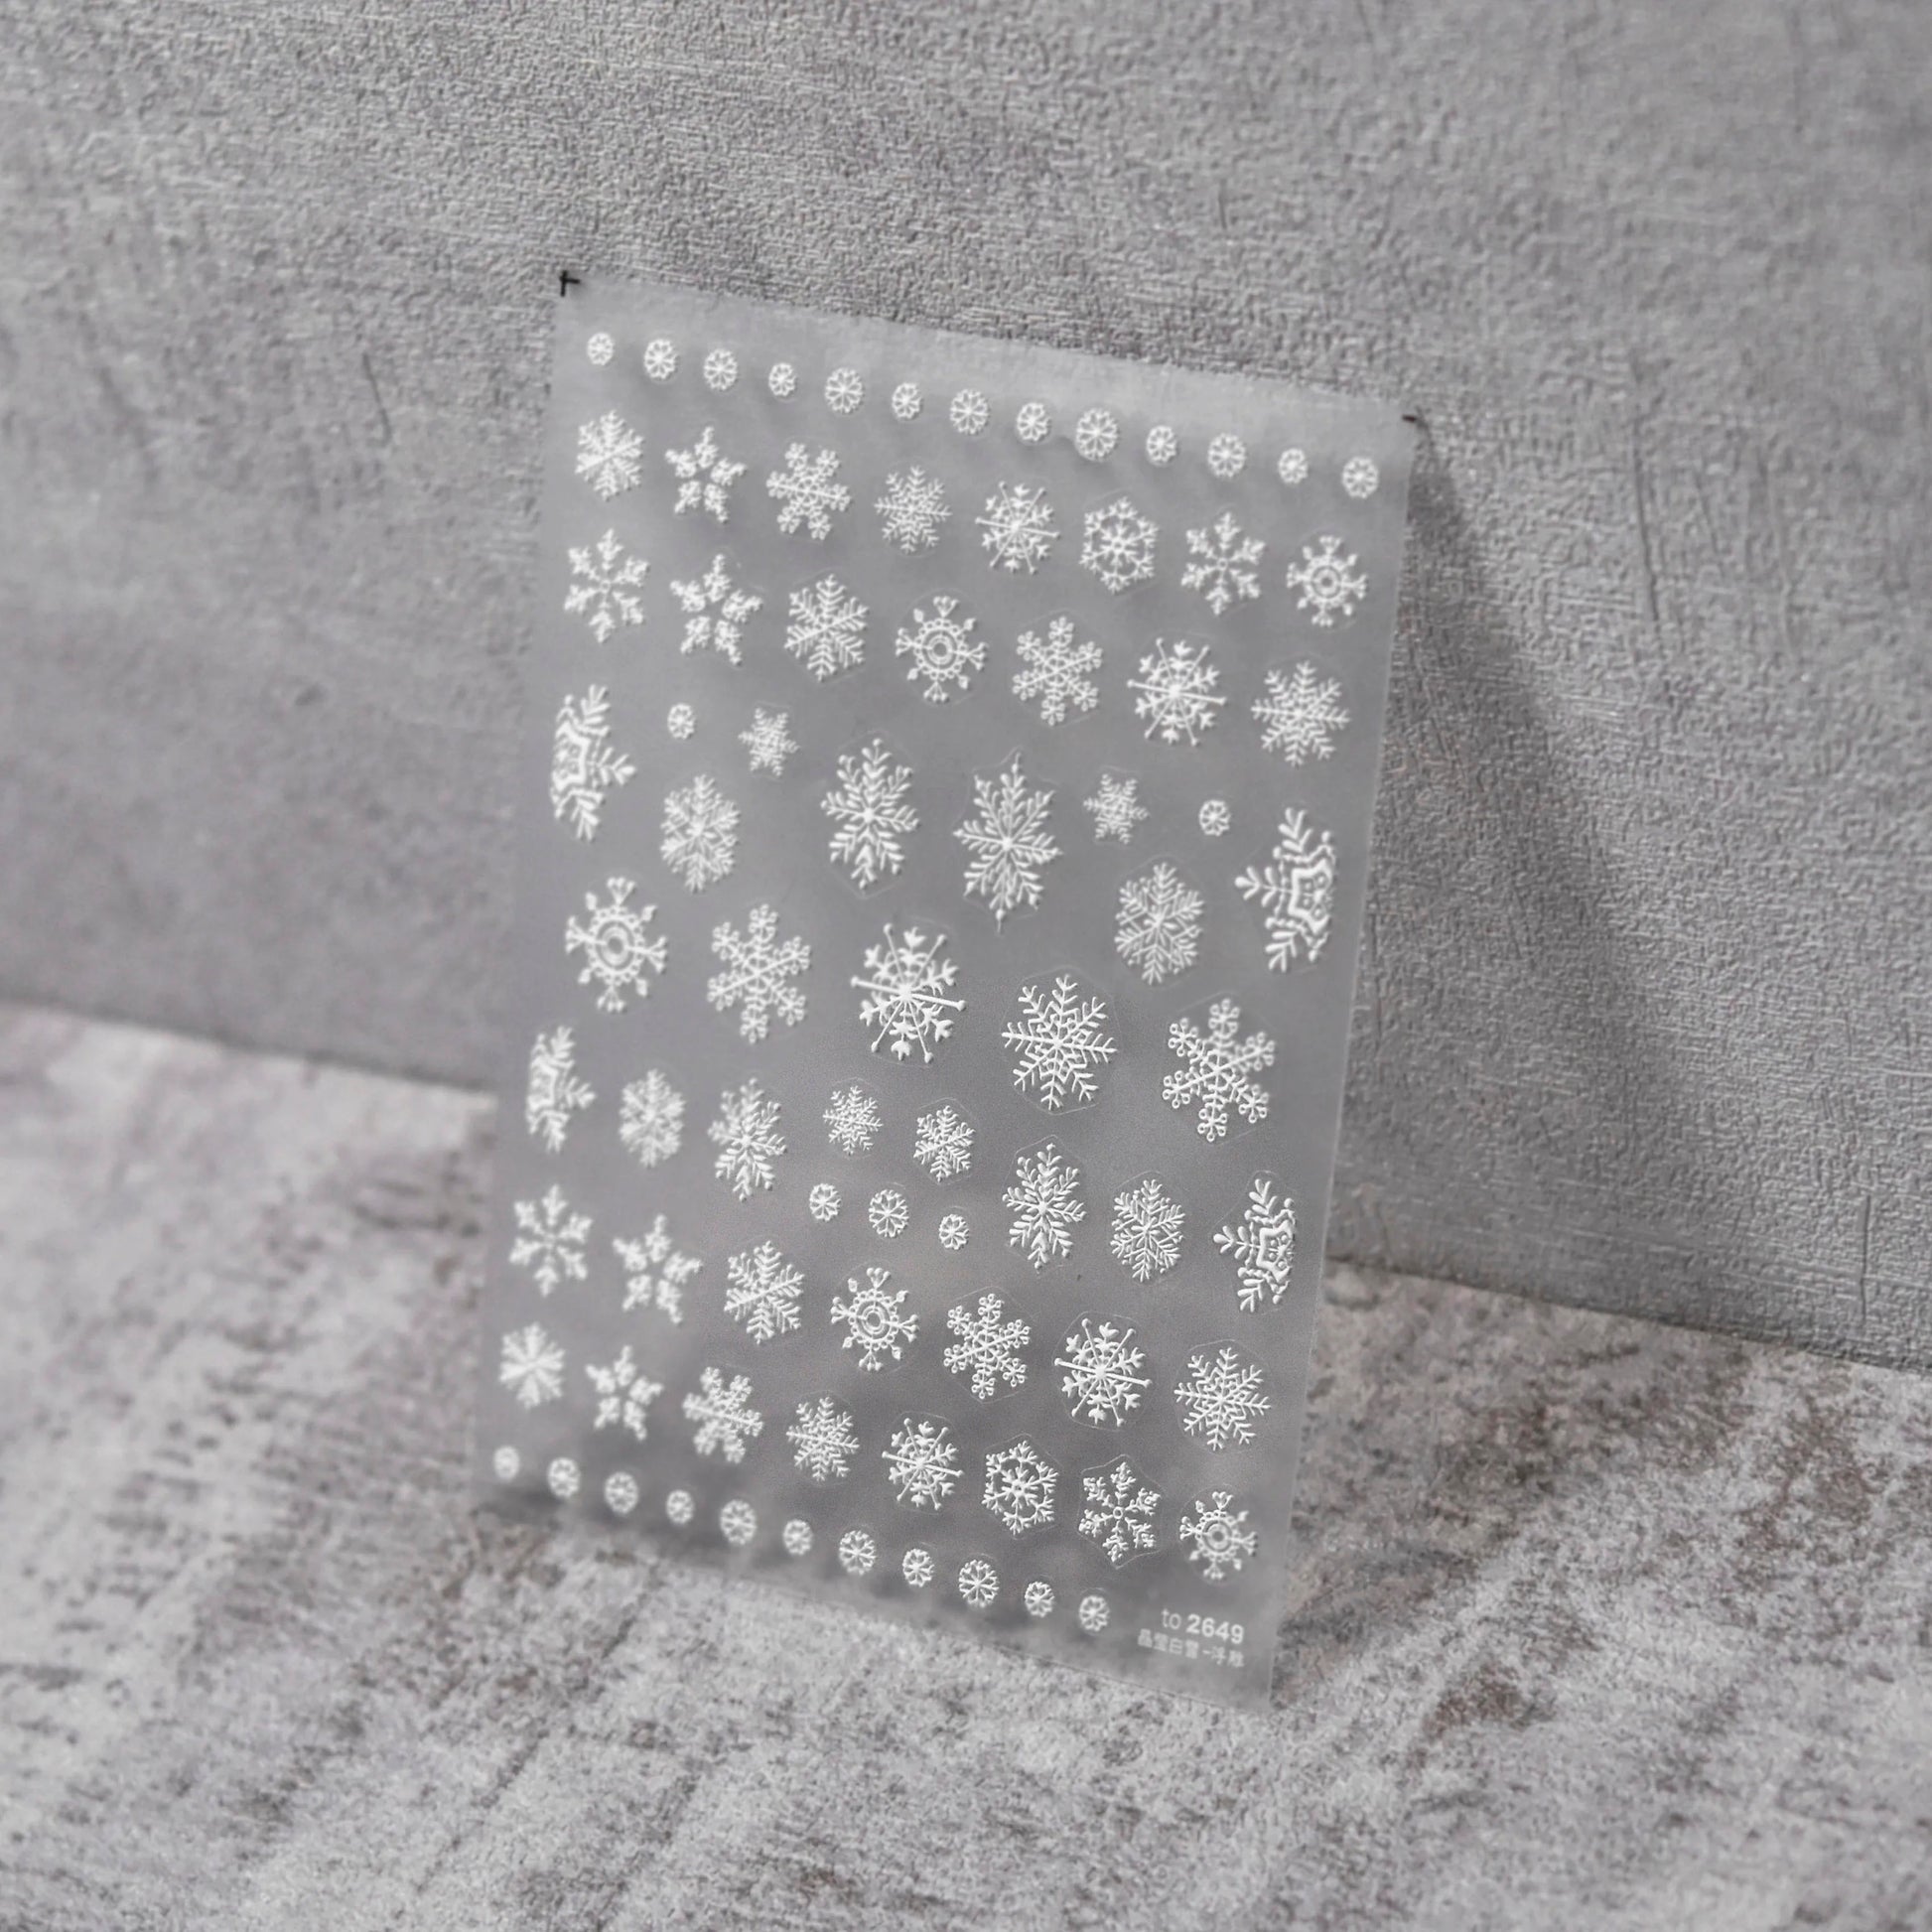 Snowflake Nail Stickers - Raised Texture White Snowflake Nail Stickers on Clear Sheet, Gray Textured Background